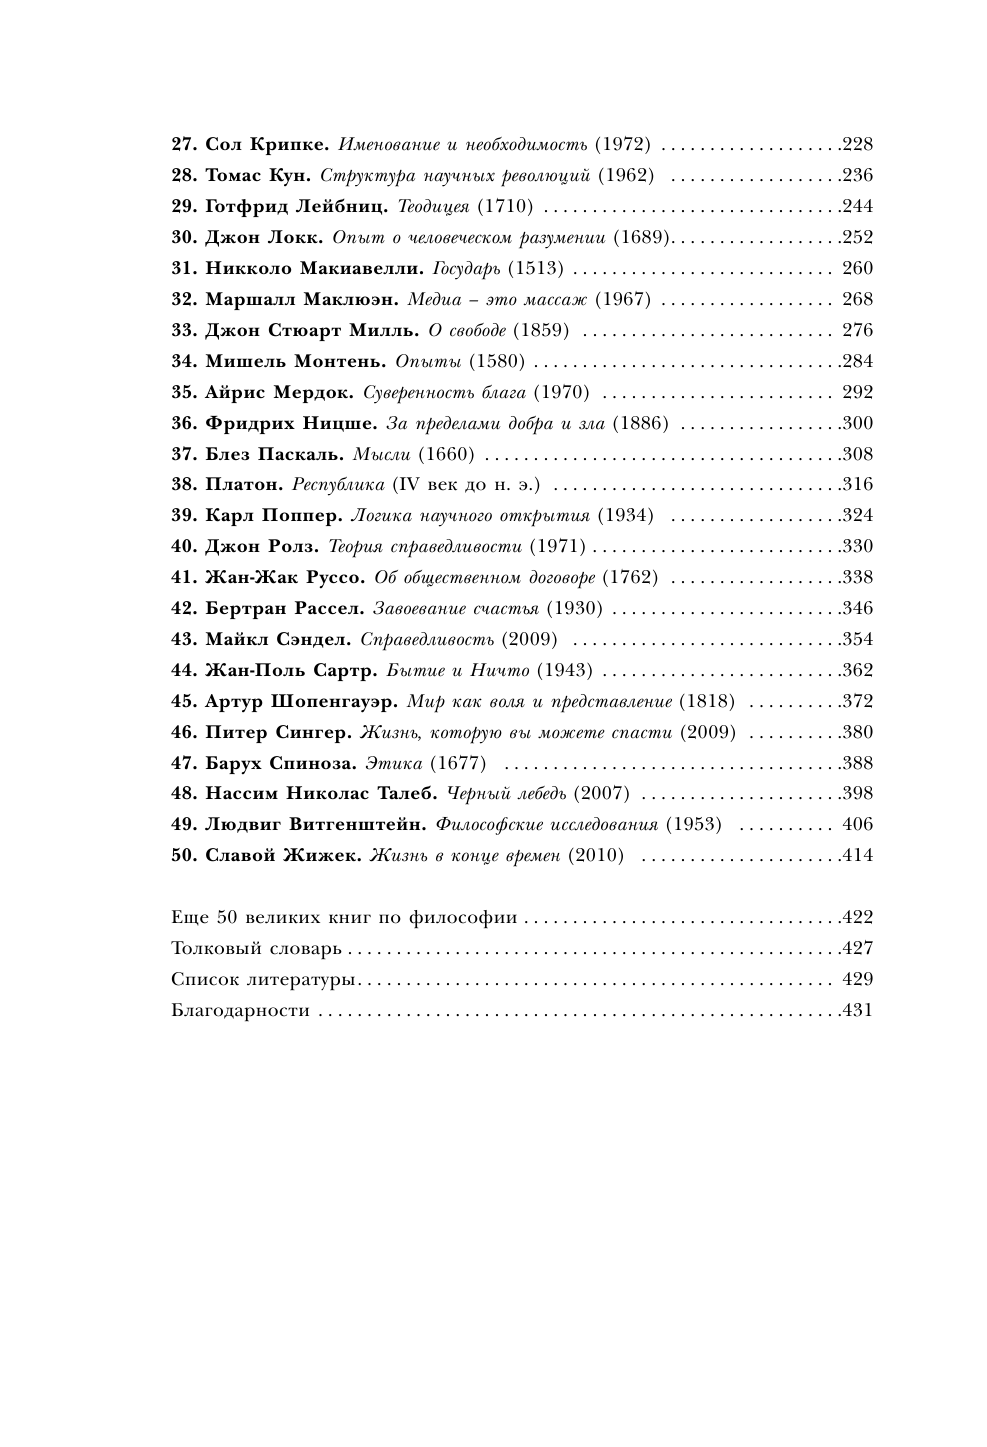 50 великих книг по философии (Батлер-Боудон Том) - фото №4